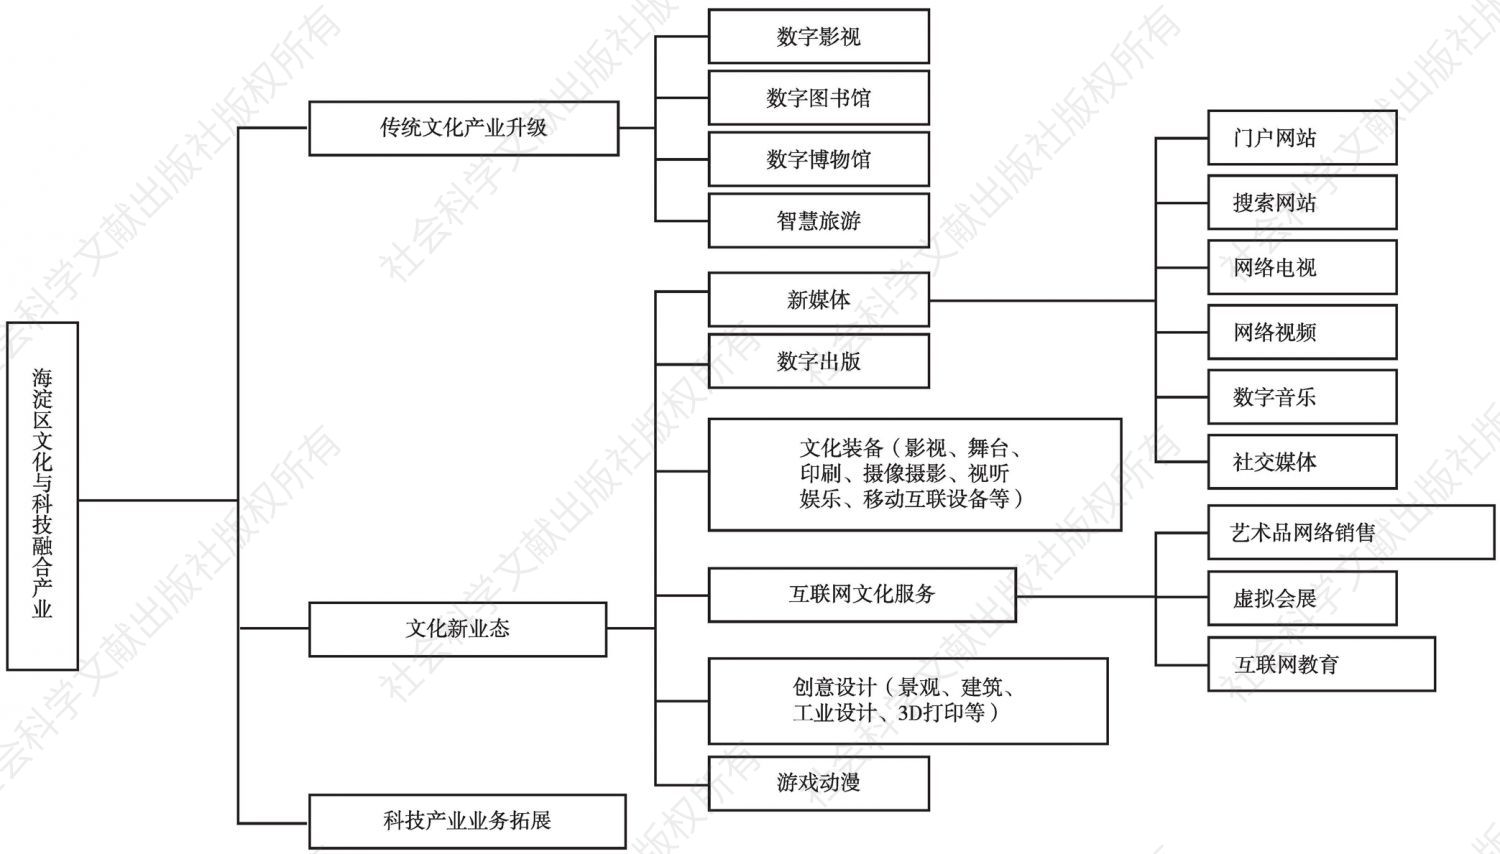 图6 海淀区文化与科技融合产业分类